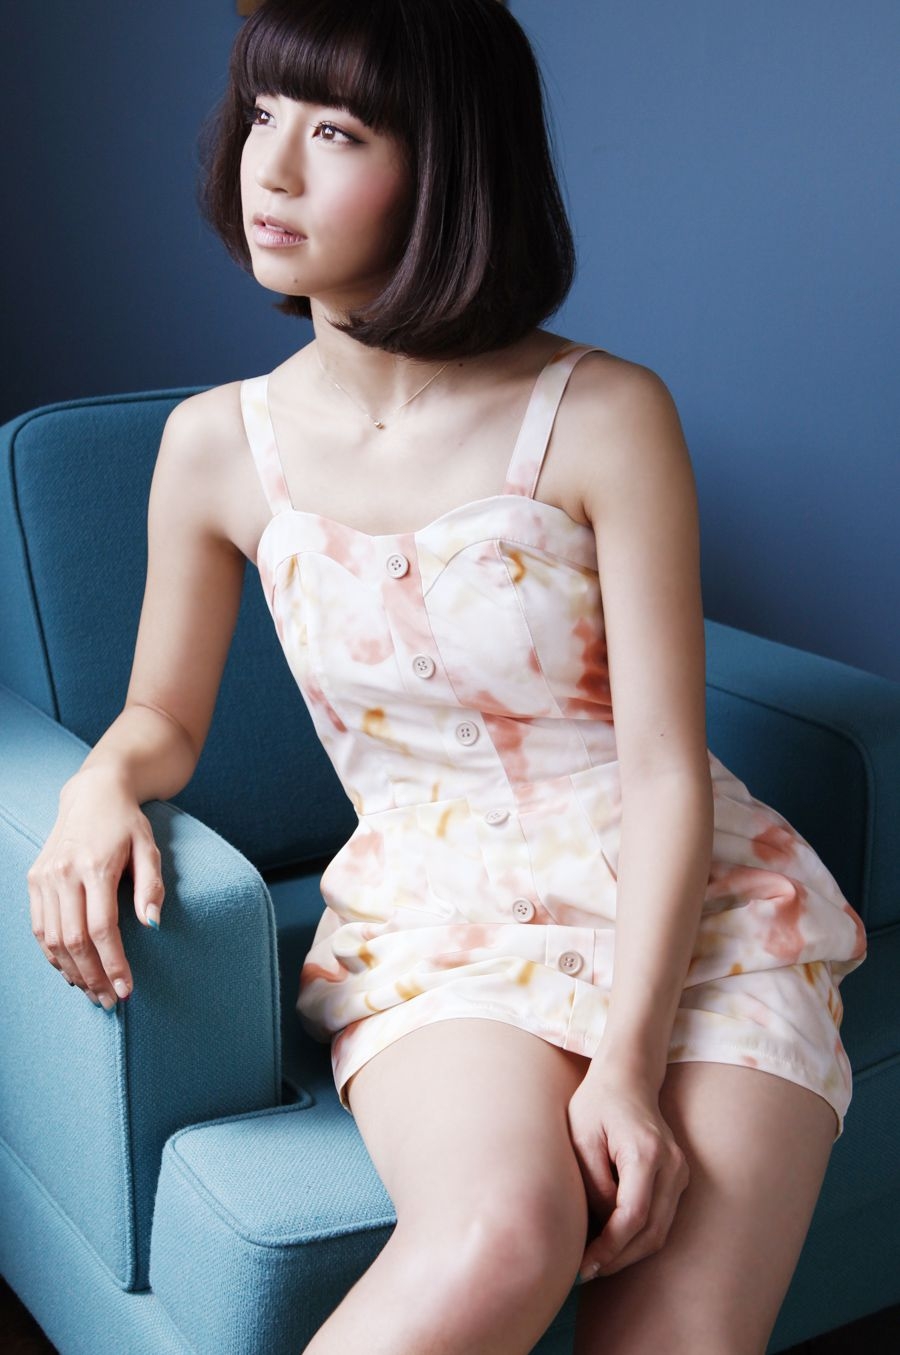 安田美沙子 Misako Yasuda [Princess Collection] 